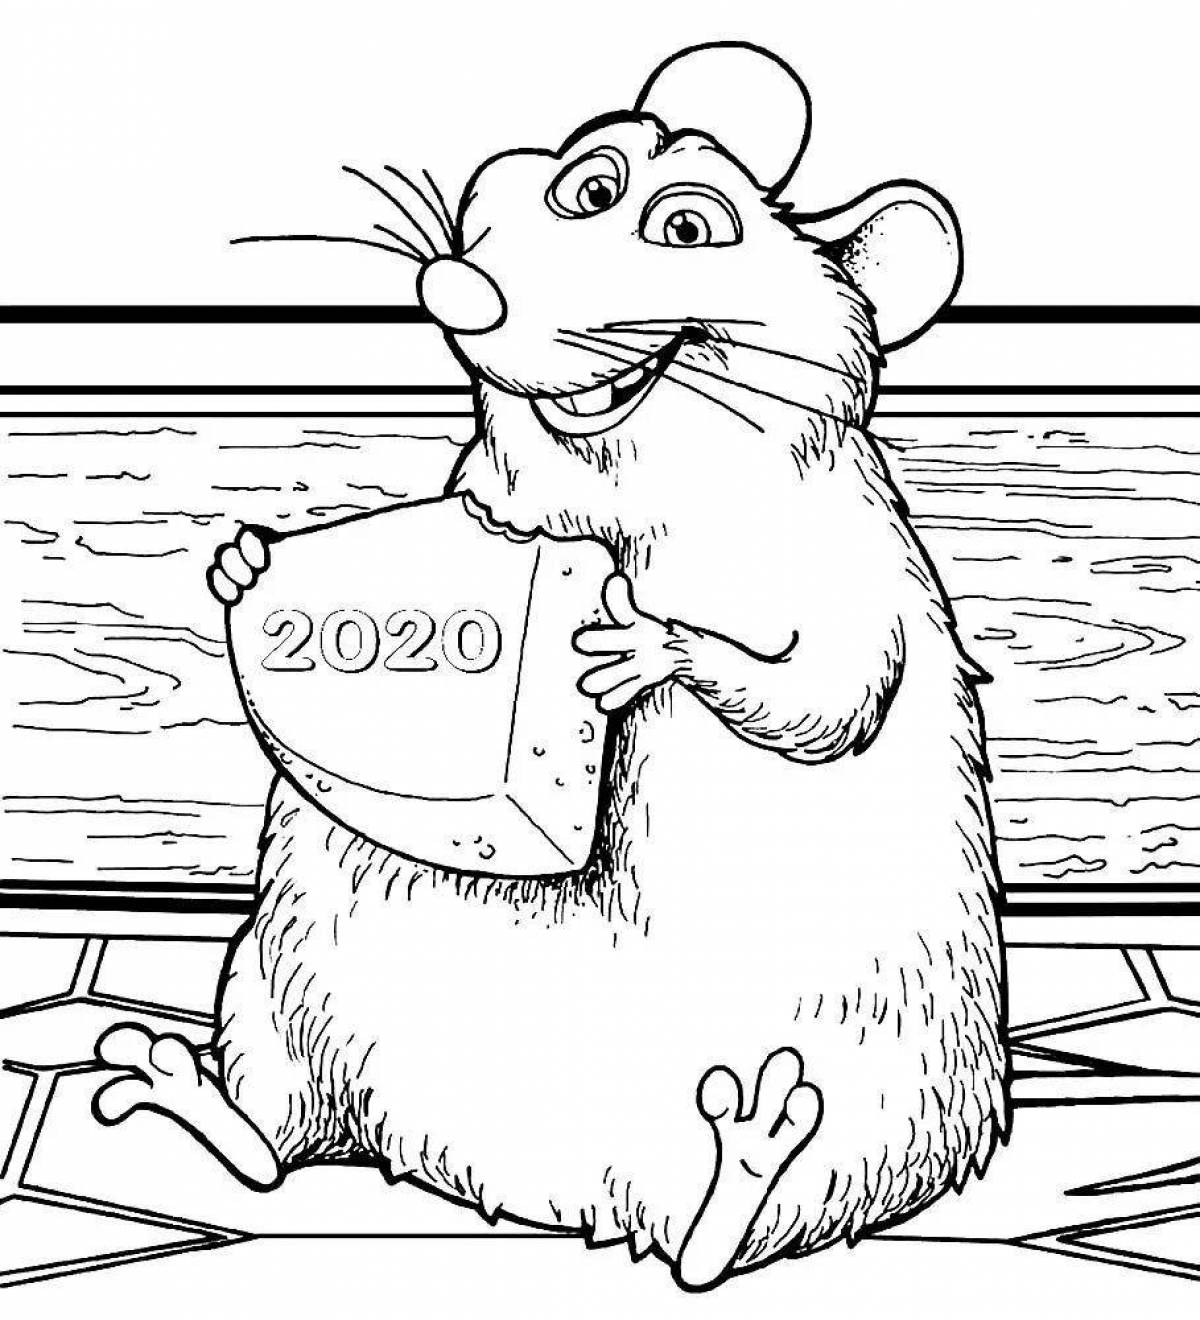 Fun rat coloring book for kids